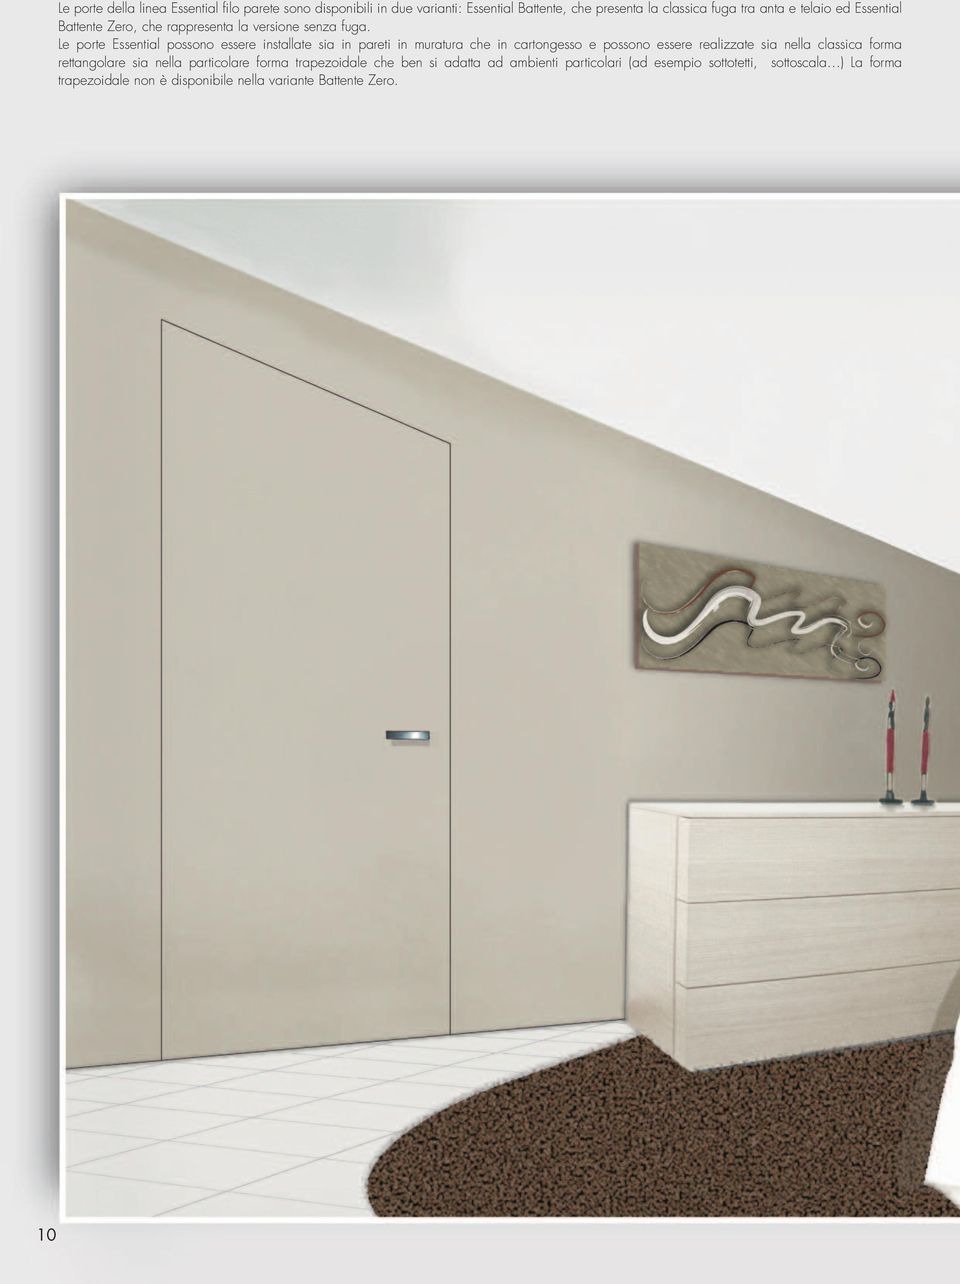 Le porte Essential possono essere installate sia in pareti in muratura che in cartongesso e possono essere realizzate sia nella classica